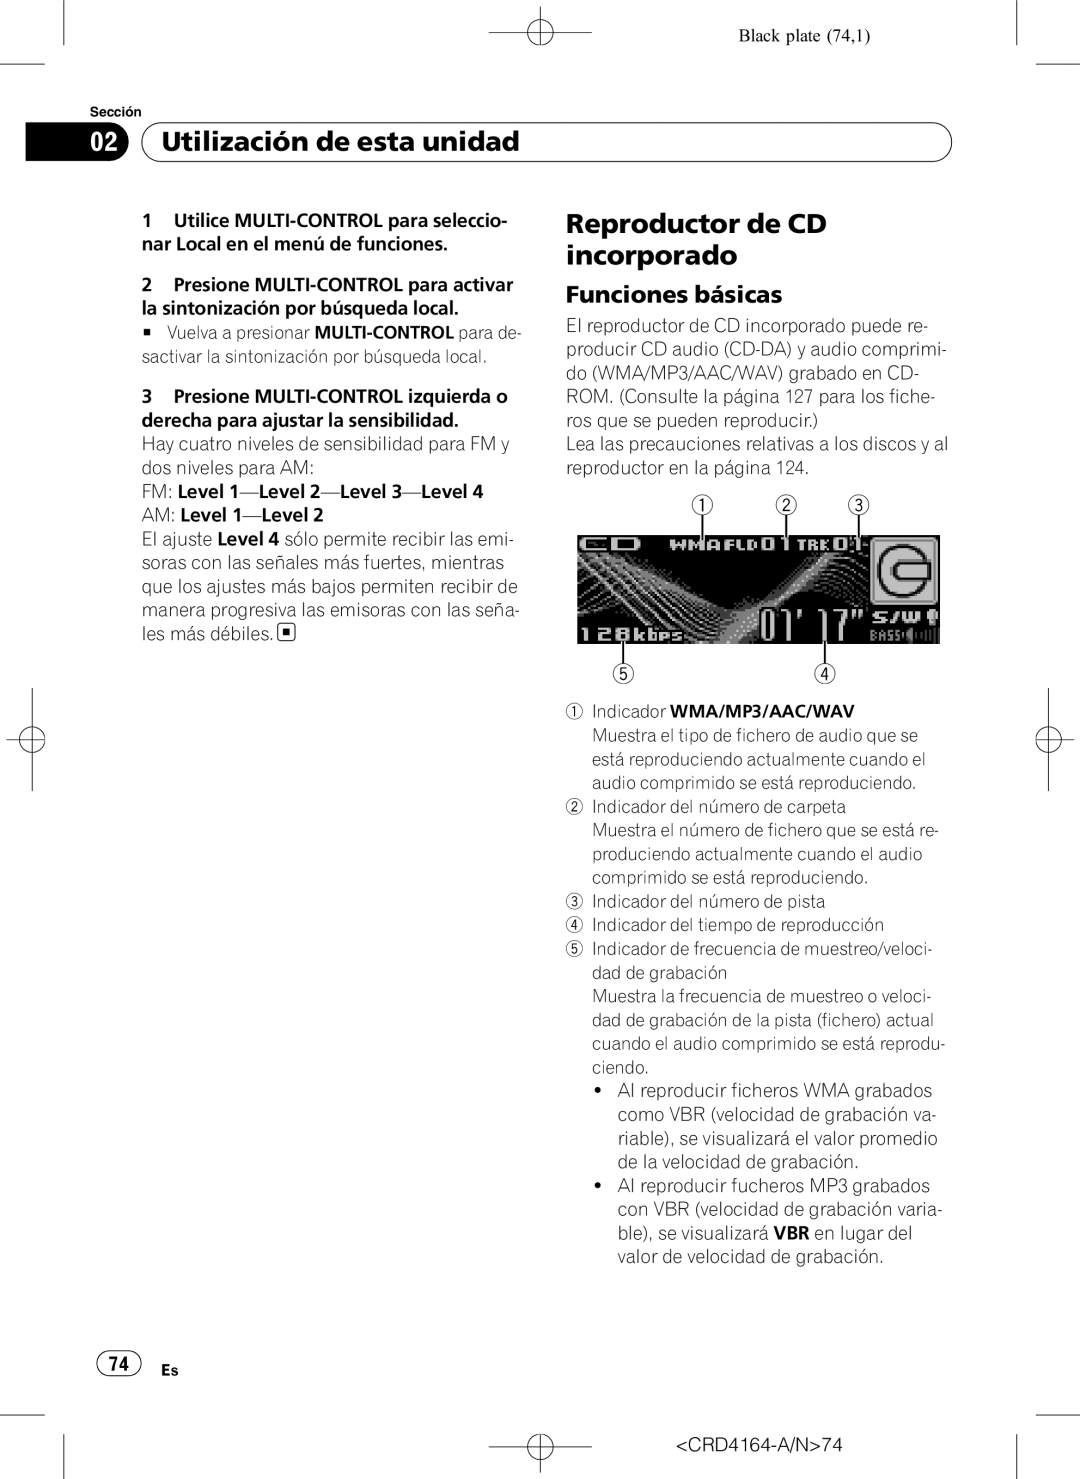 Pioneer DEH-P7950UB operation manual Reproductor de CD, incorporado, Utilización de esta unidad, Funciones básicas 